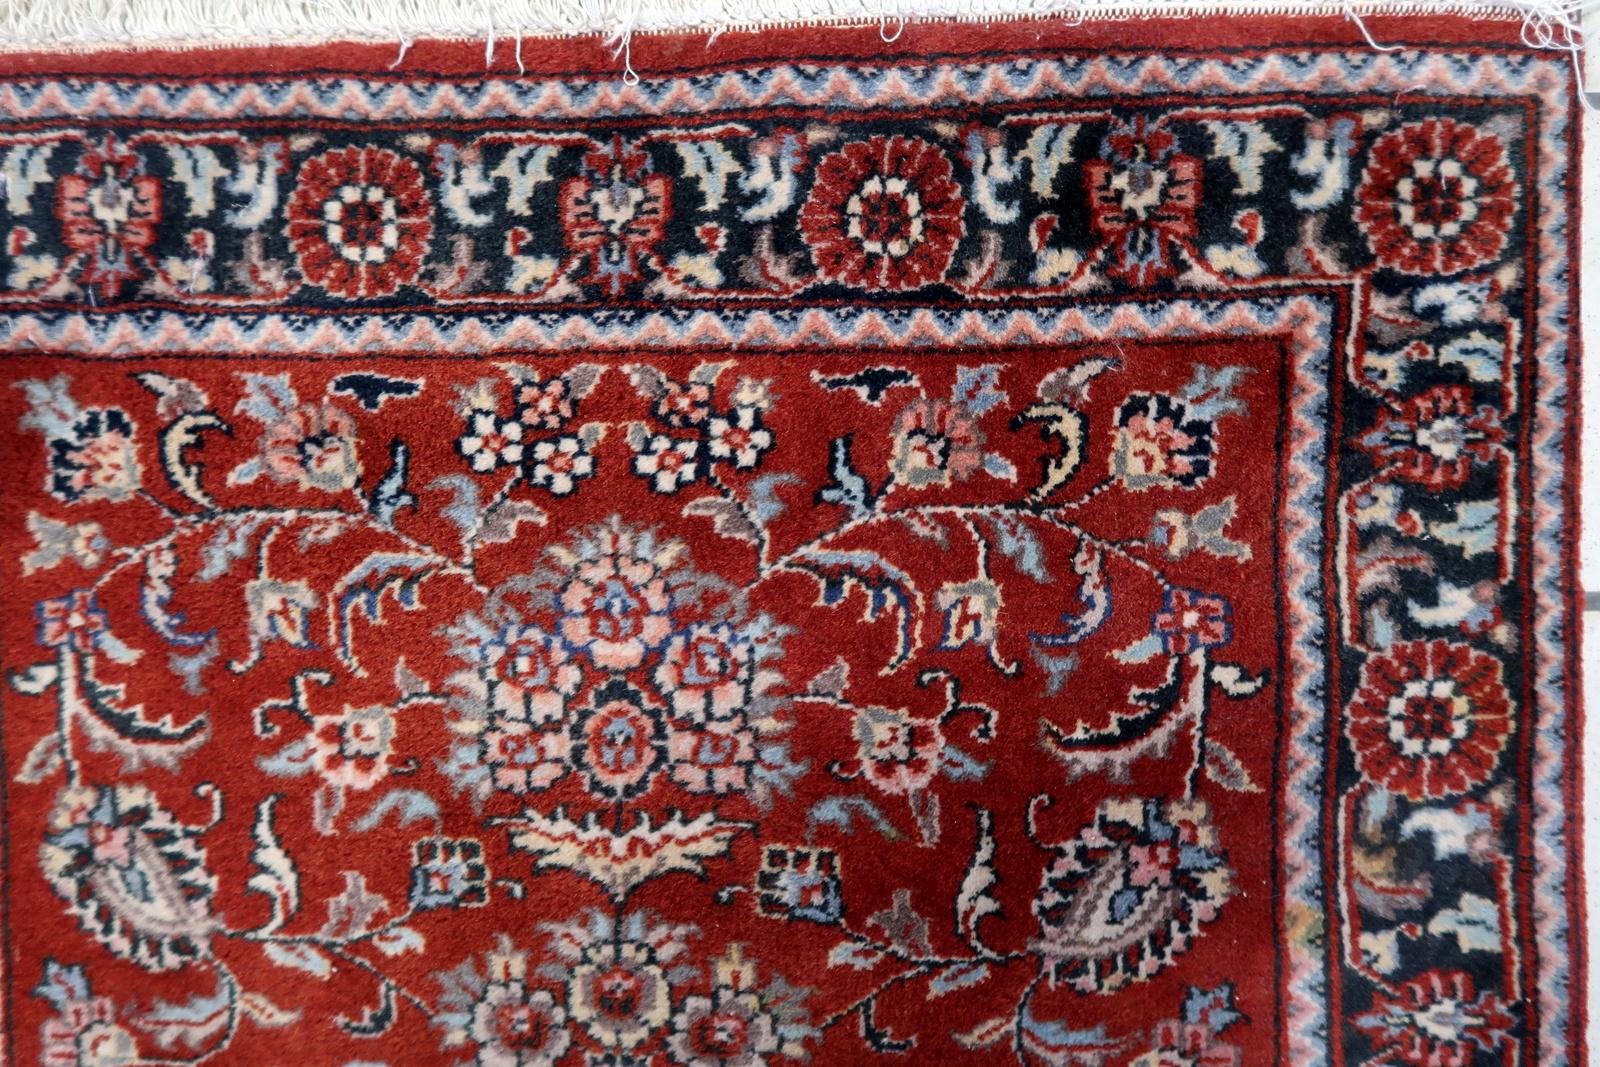 Handgefertigter Sarouk-Teppich im persischen Vintage-Stil aus den 1970er Jahren. Dieses exquisite Stück, das 2,4 mal 4 Fuß misst, vermittelt ein Gefühl von Ehrfurcht und Tradition.

Beschreibung des Produkts:
Design/One Patterns:
In der Mitte des